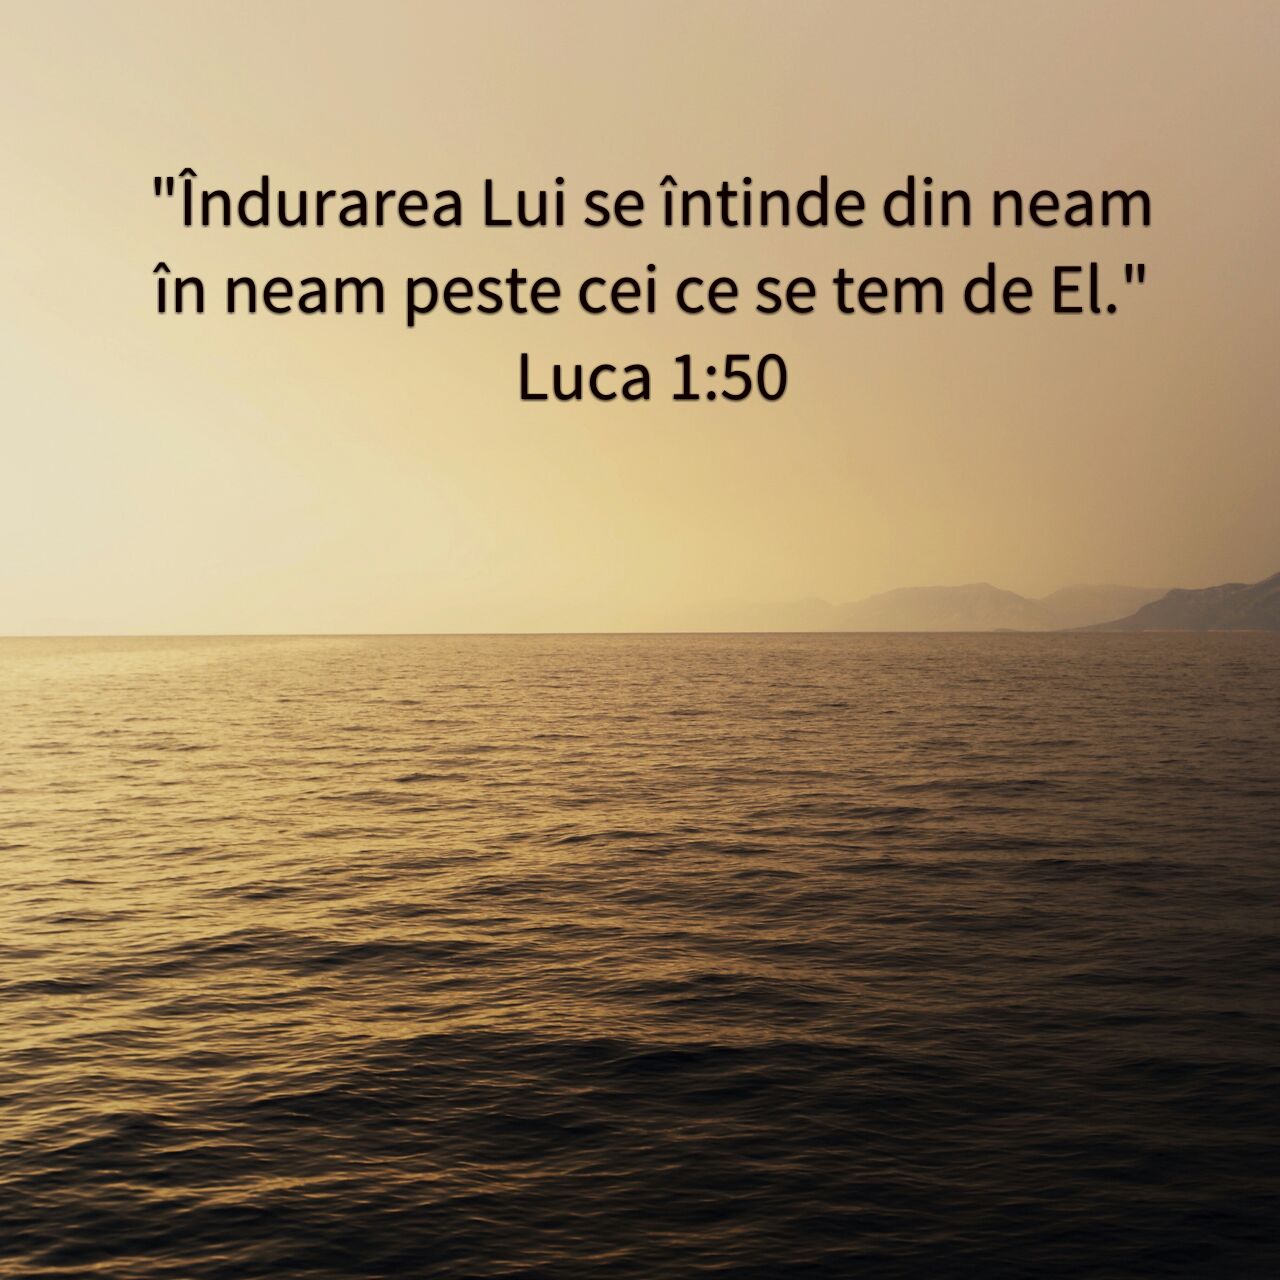 Luca 1:50